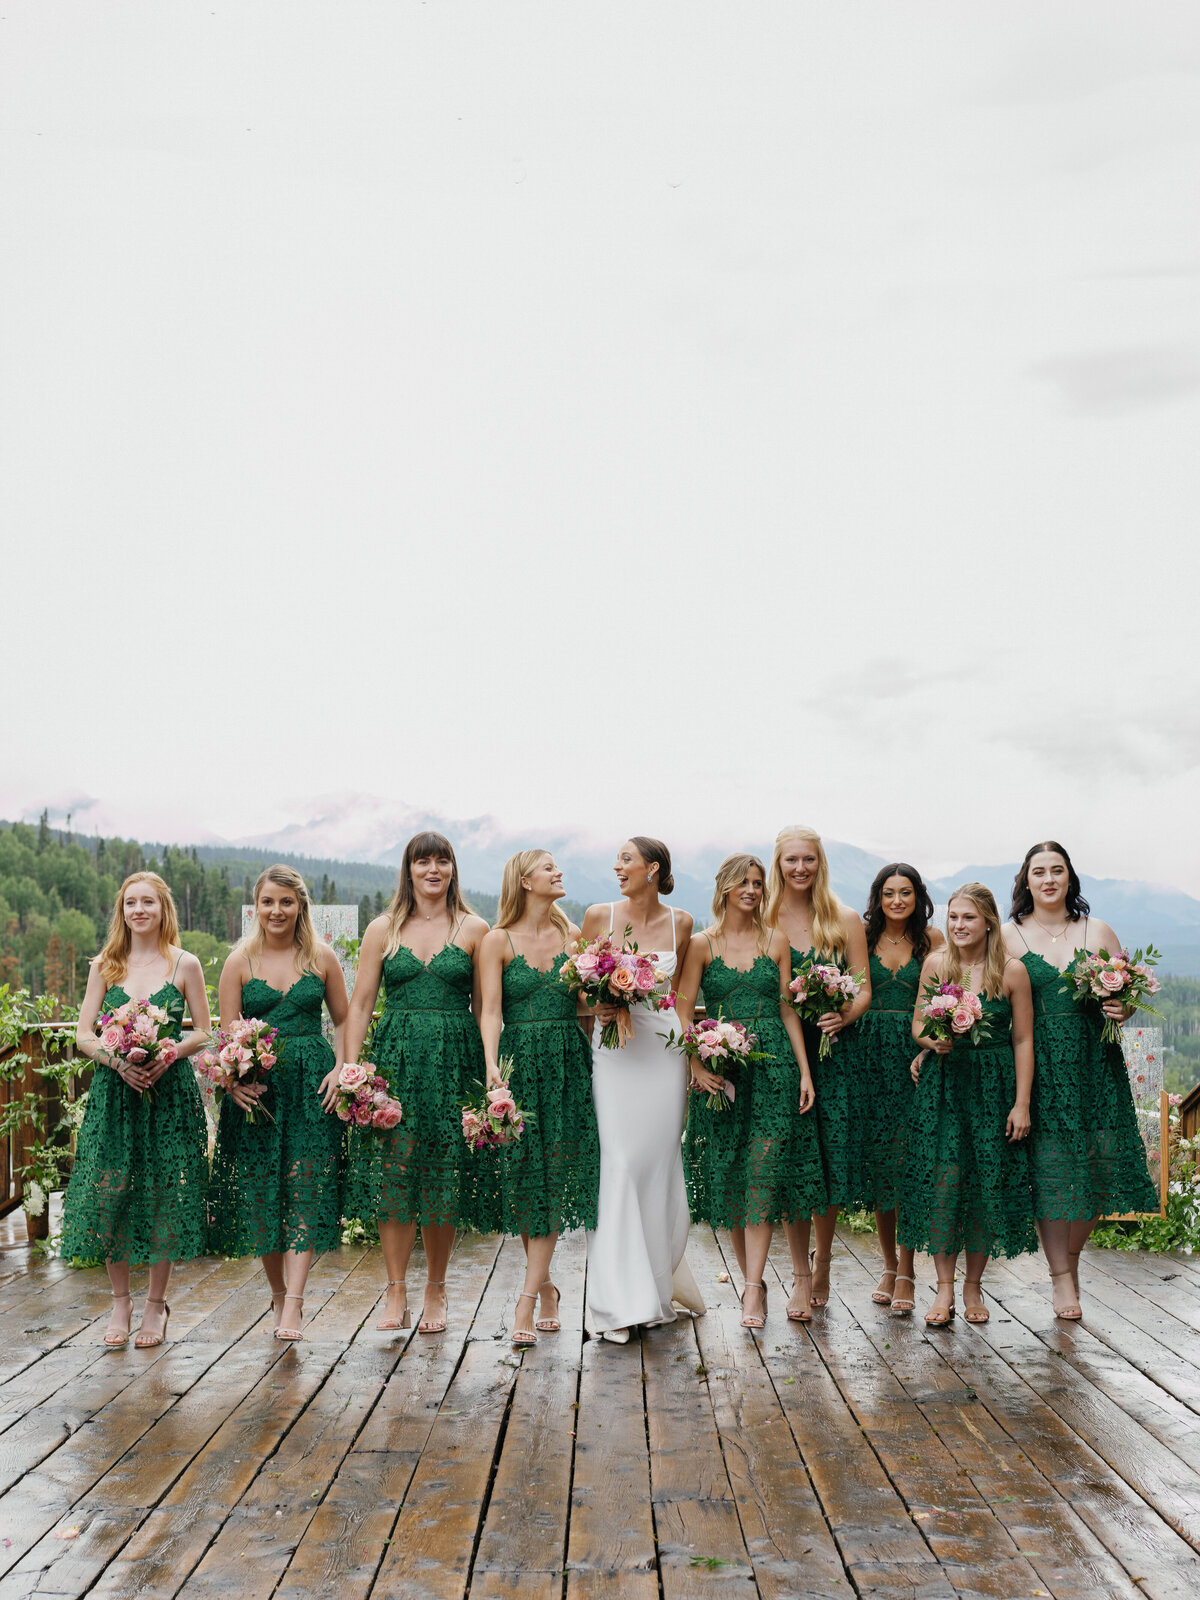 Logan & Ben - Fashion-Forward Mountaintop Wedding in Telluride, Colorado-33